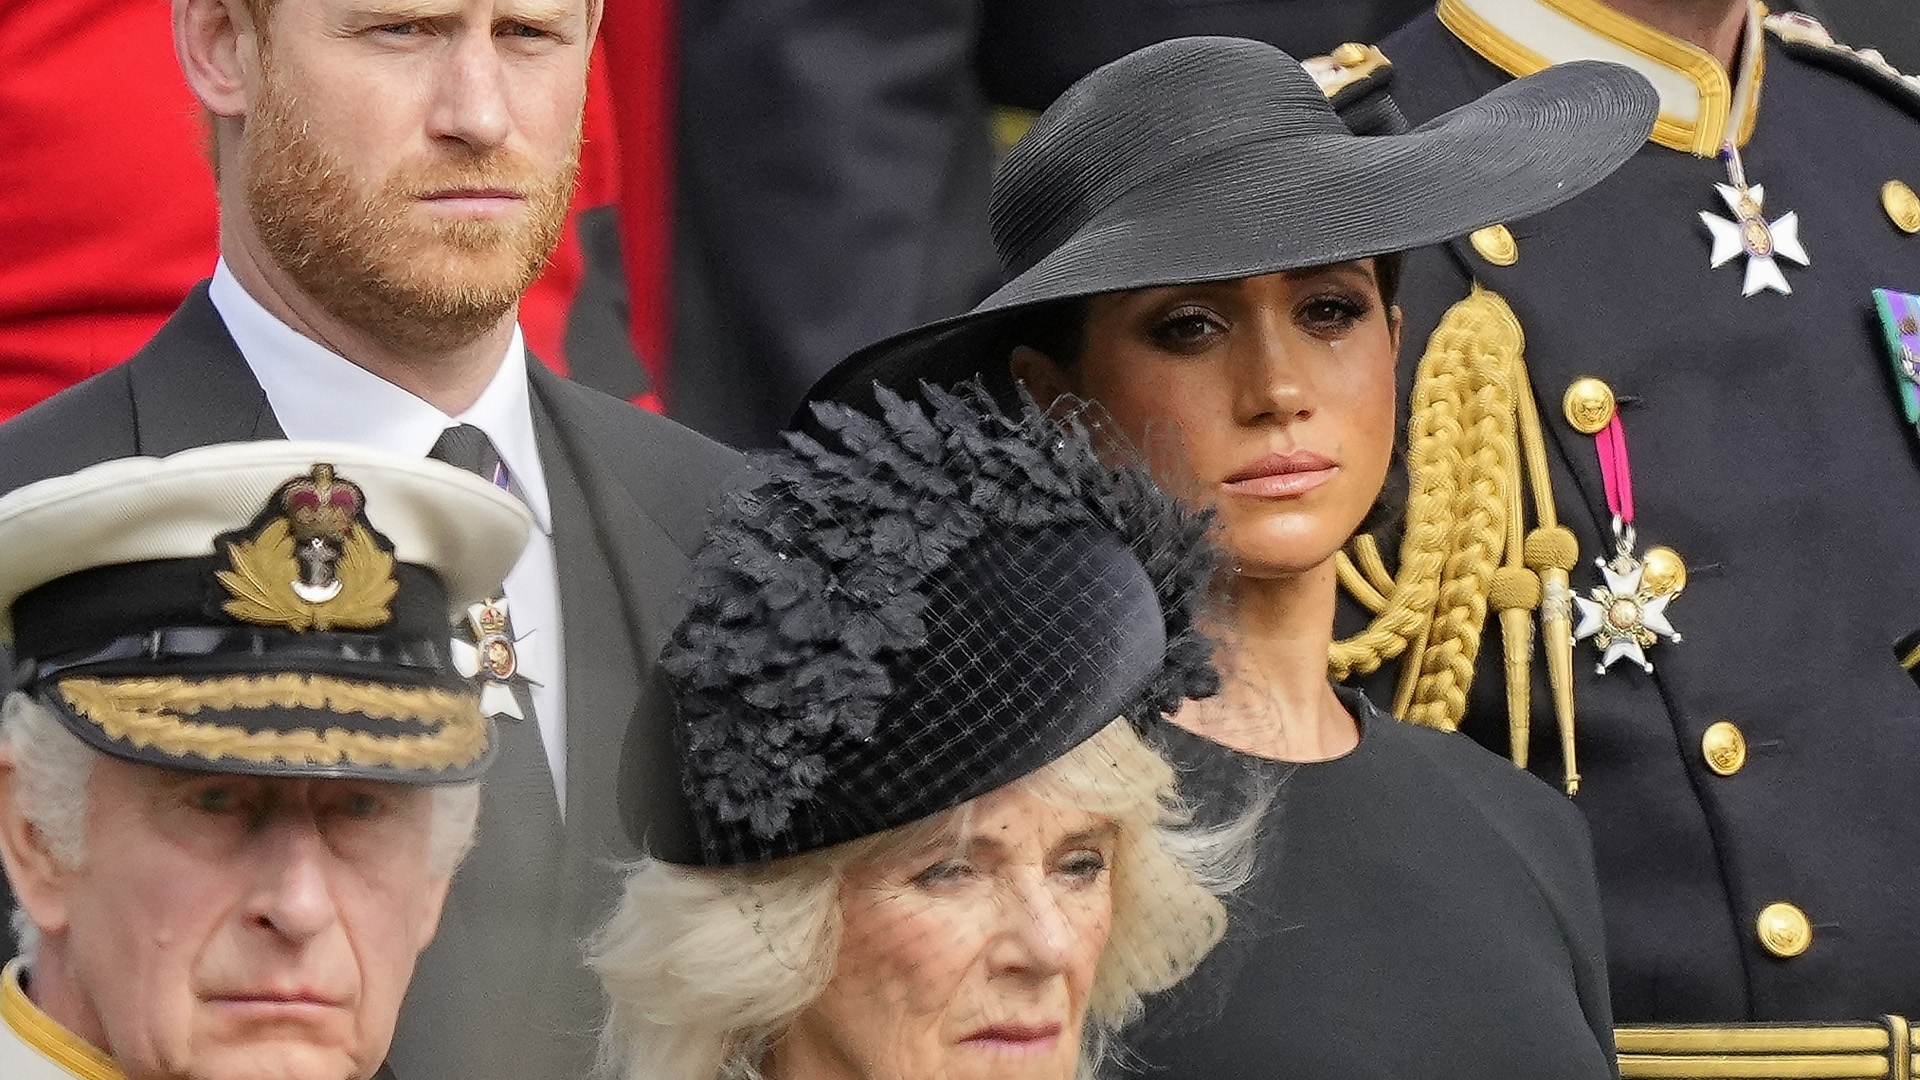 La famille royale aux funérailles de la reine Elizabeth II - 2022. Le prince Harry a défendu ses mémoires qui mettent à nu les failles au sein de la famille royale britannique. Il dit dans des interviews télévisées diffusées dimanche qu'il voulait « posséder mon histoire » après 38 ans de « rotation et distorsion » par d'autres.